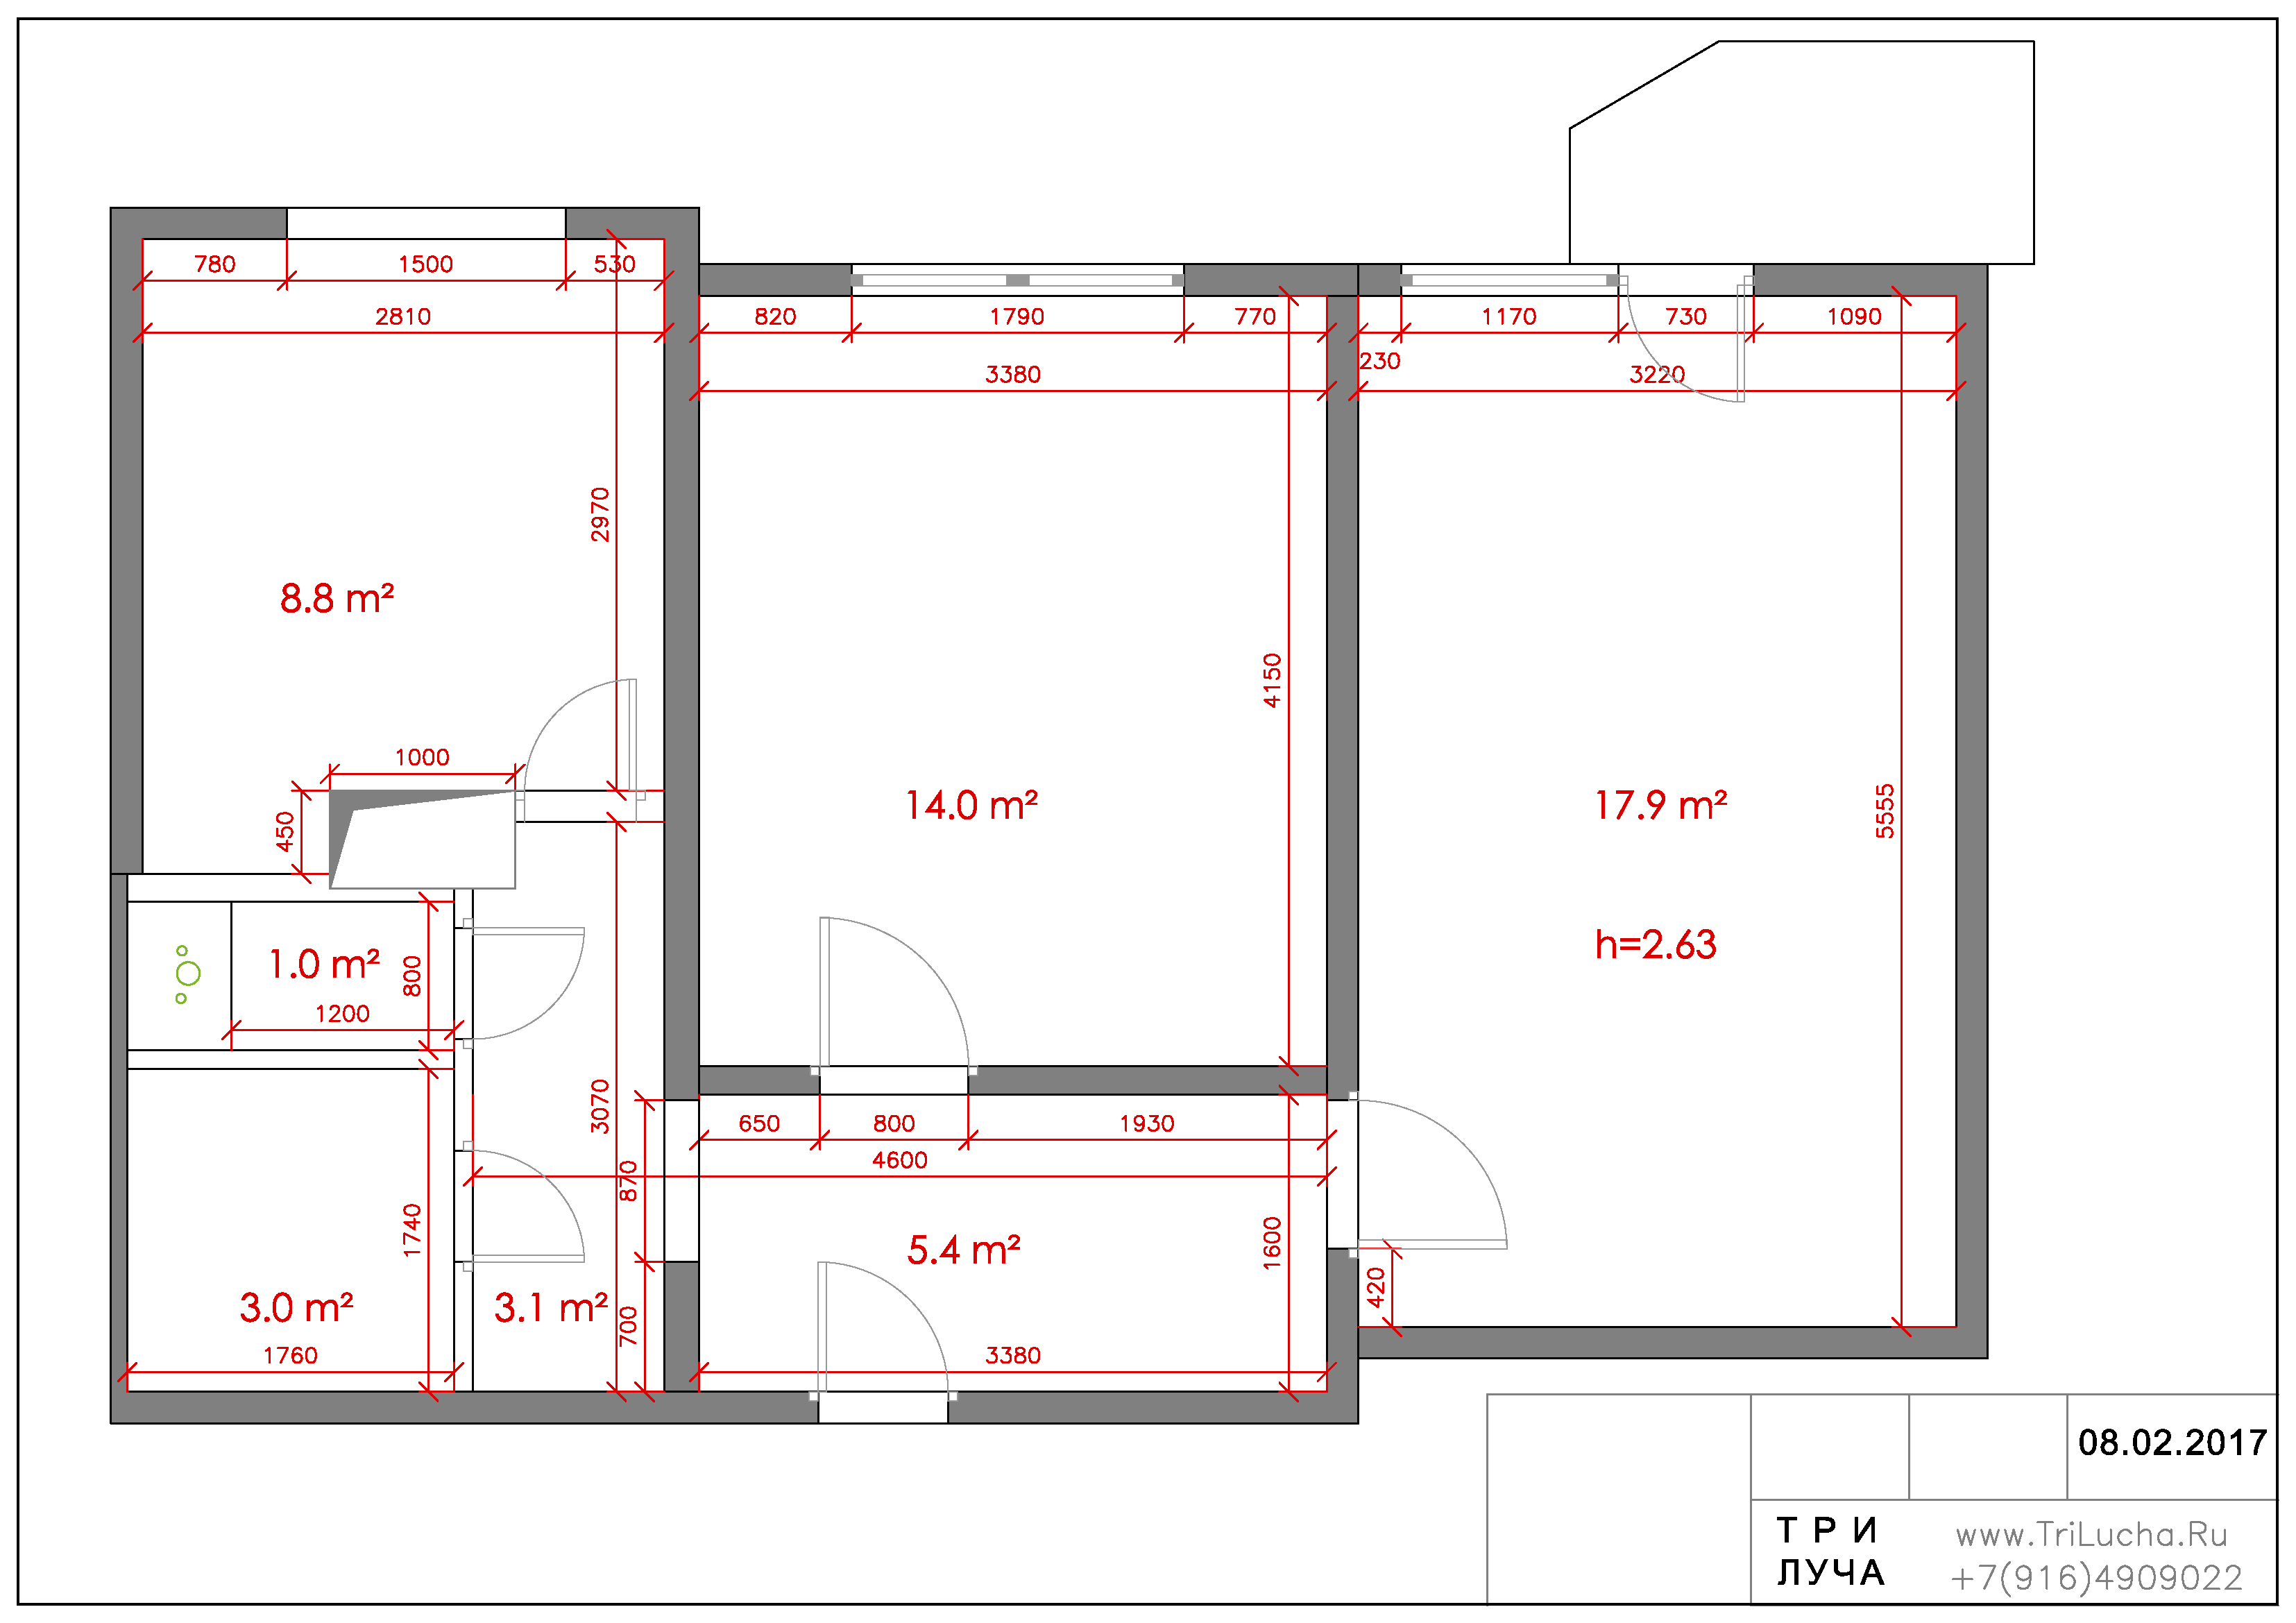 Размеры комнат в панельном доме